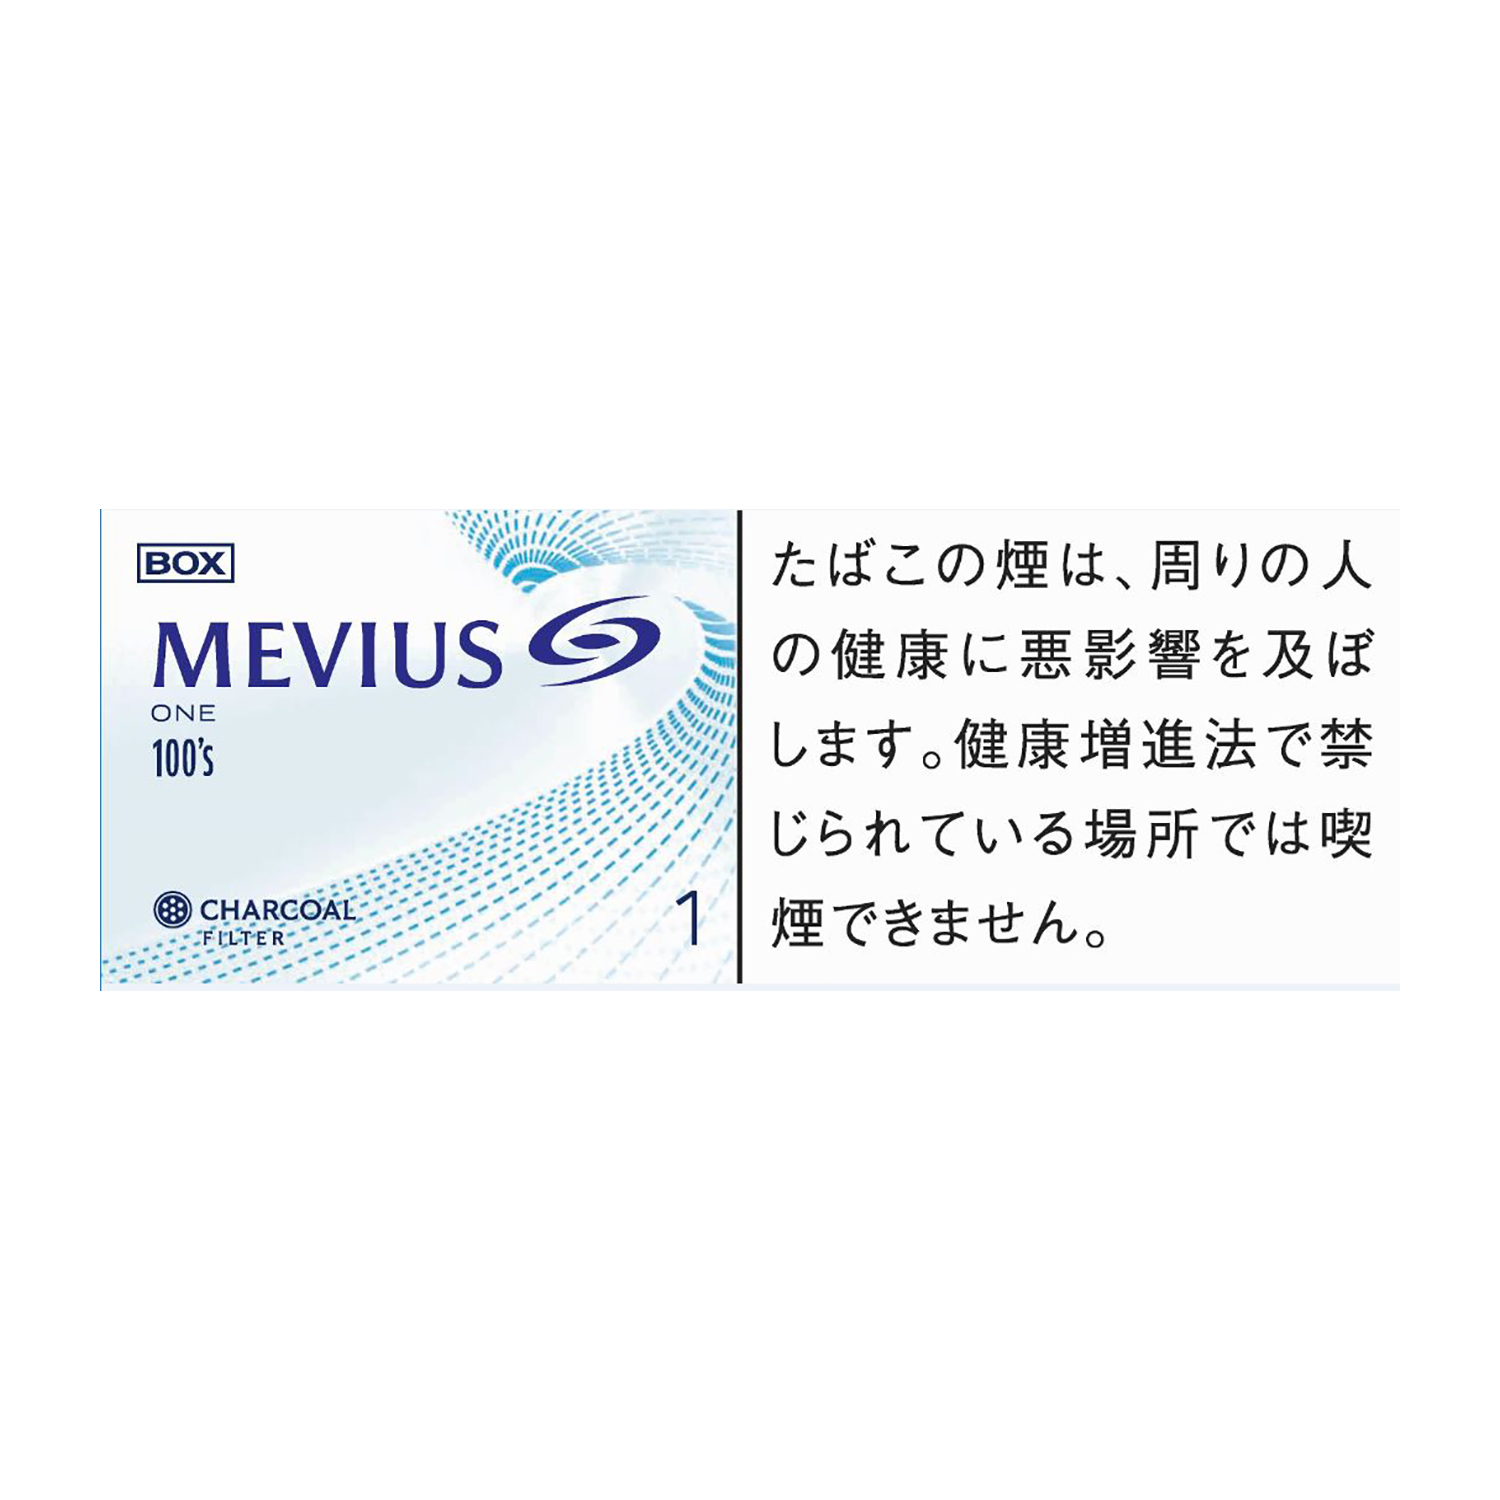 MEVIUS ONE 100's BOX / Tar:1mg Nicotine:0.1mg